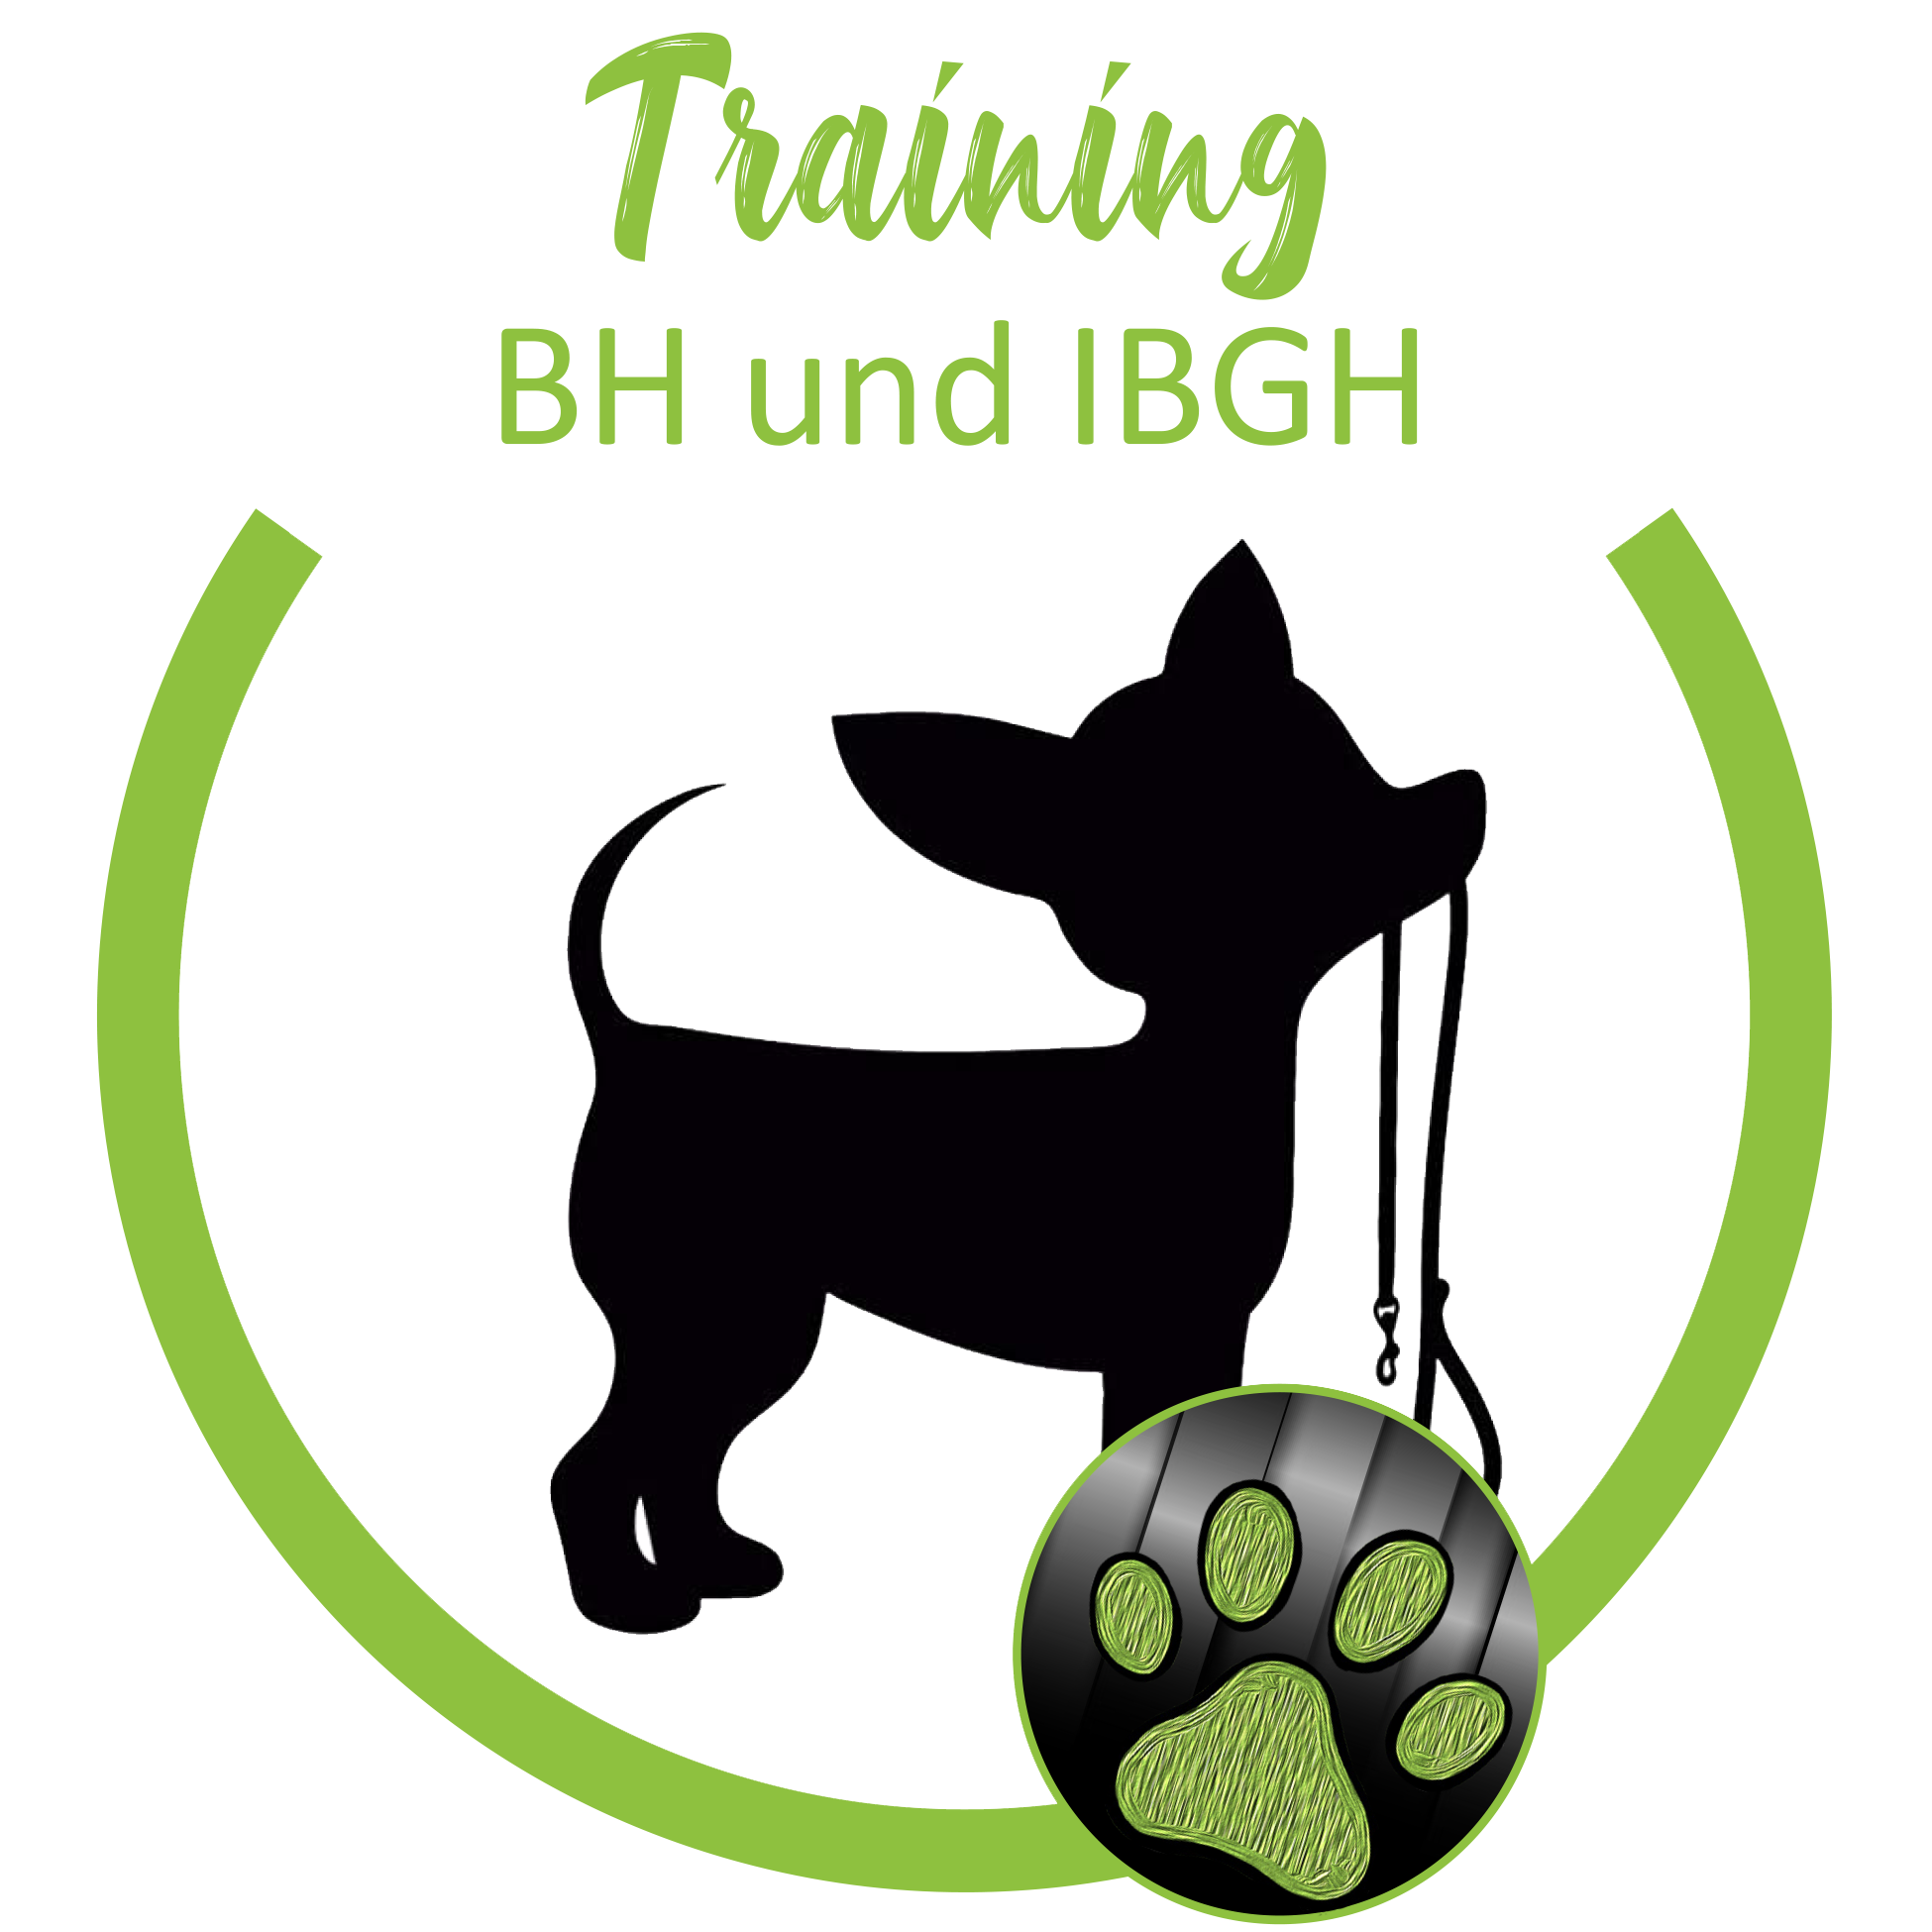 Training BH und IBGH